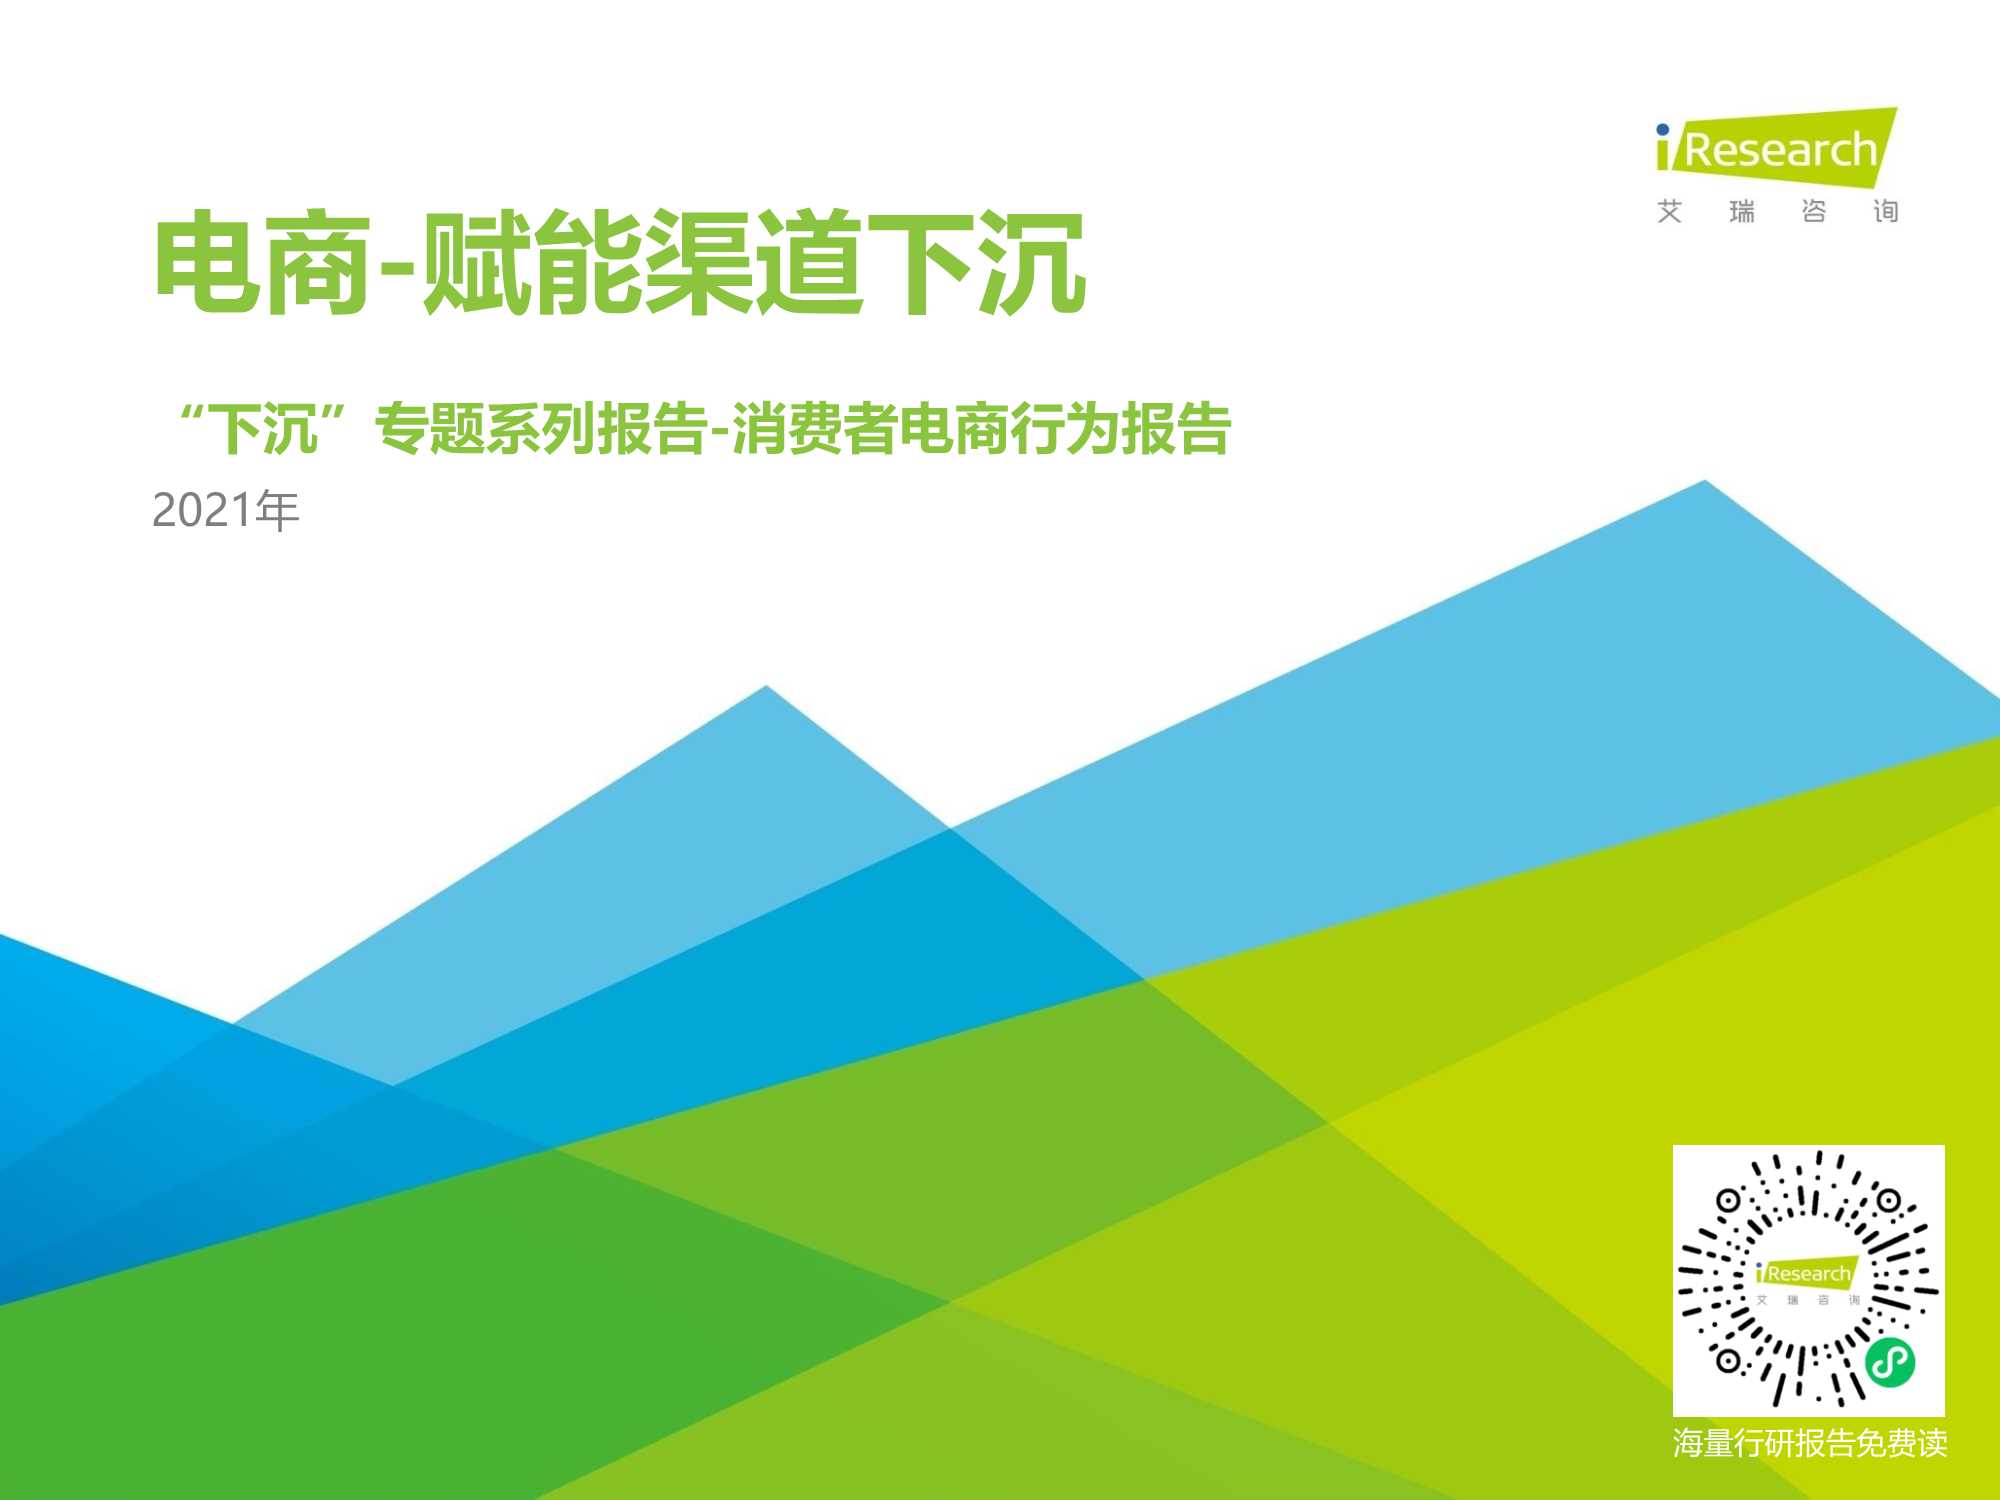 艾瑞咨询-2021年中国下沉市场电商研究报告-2021.05-28页